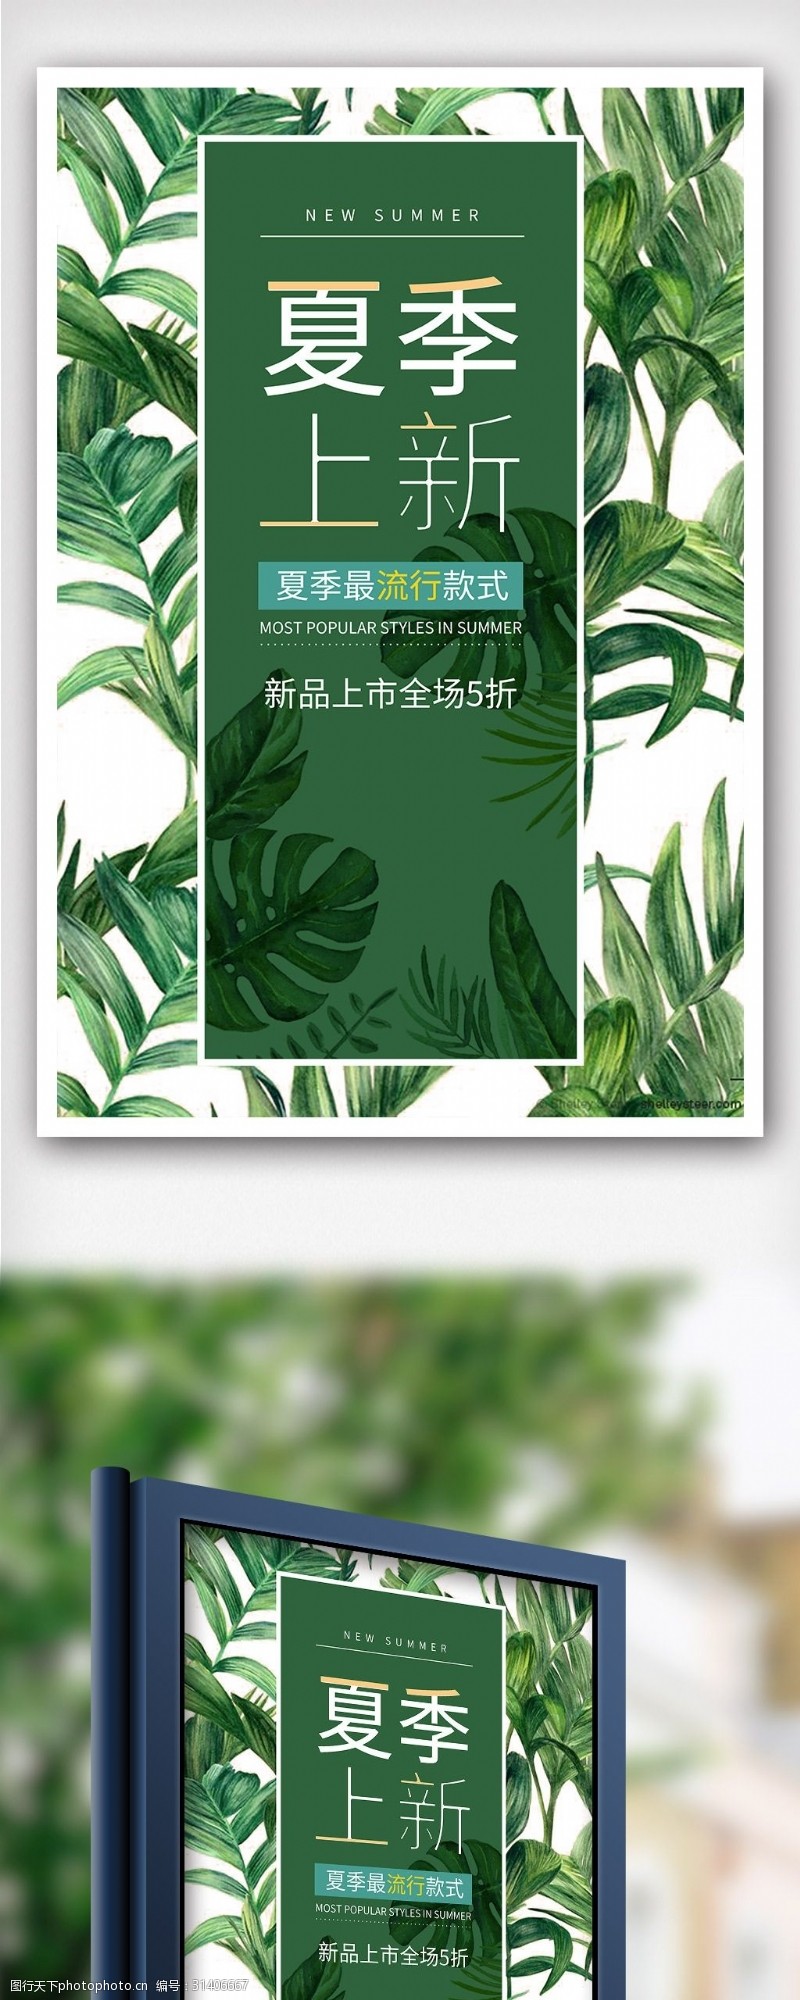 淘宝海报免费下载中国风泼水节民俗风情节日海报